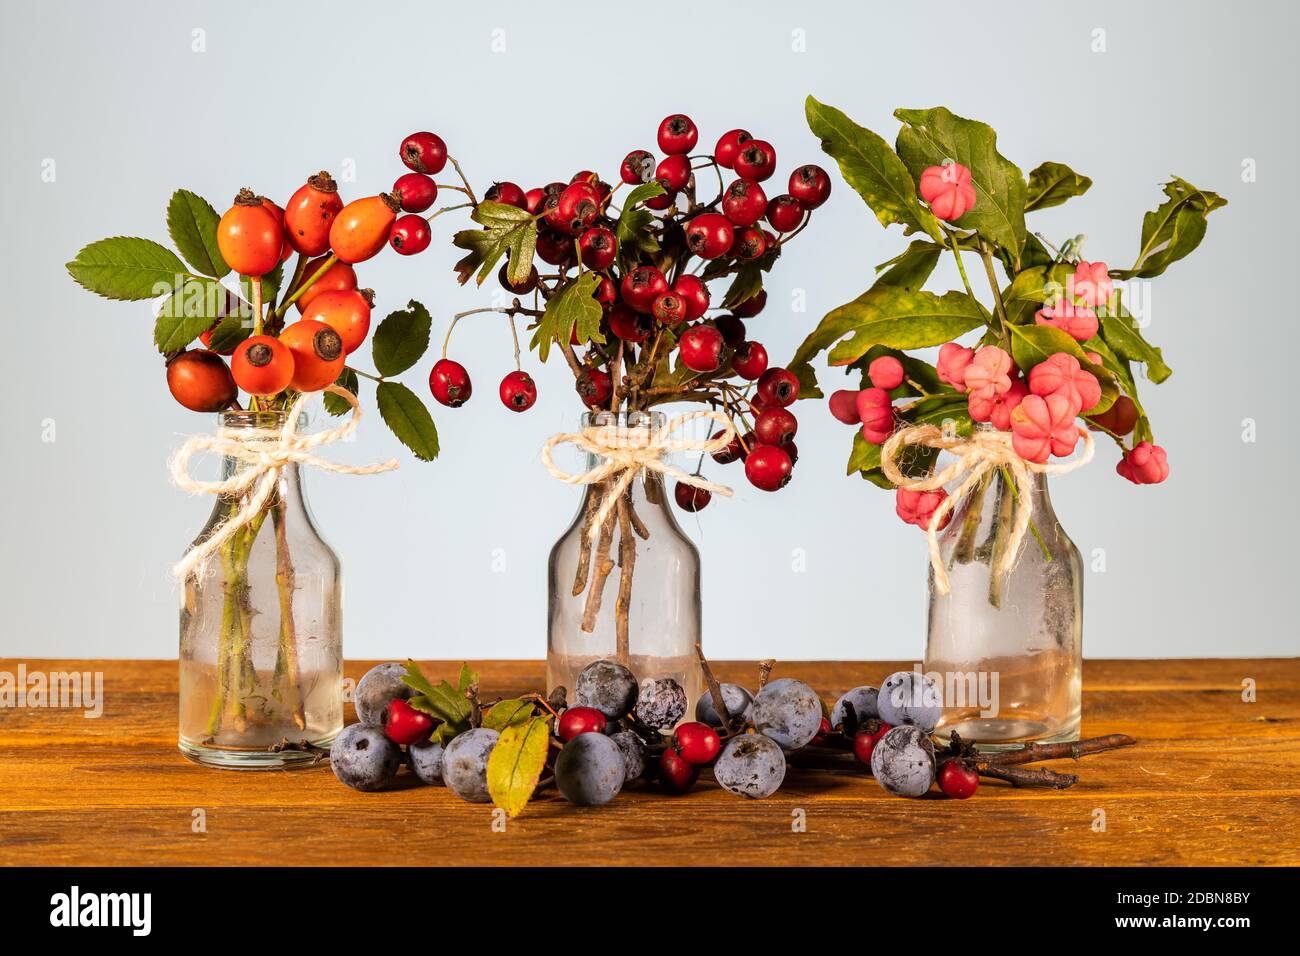 Xmas Still Life composizione: Vasi trasparenti con arco a nastro e rametti ornamentali di frutti di bosco. Foglie giallastre e piccolo pinecone Foto Stock